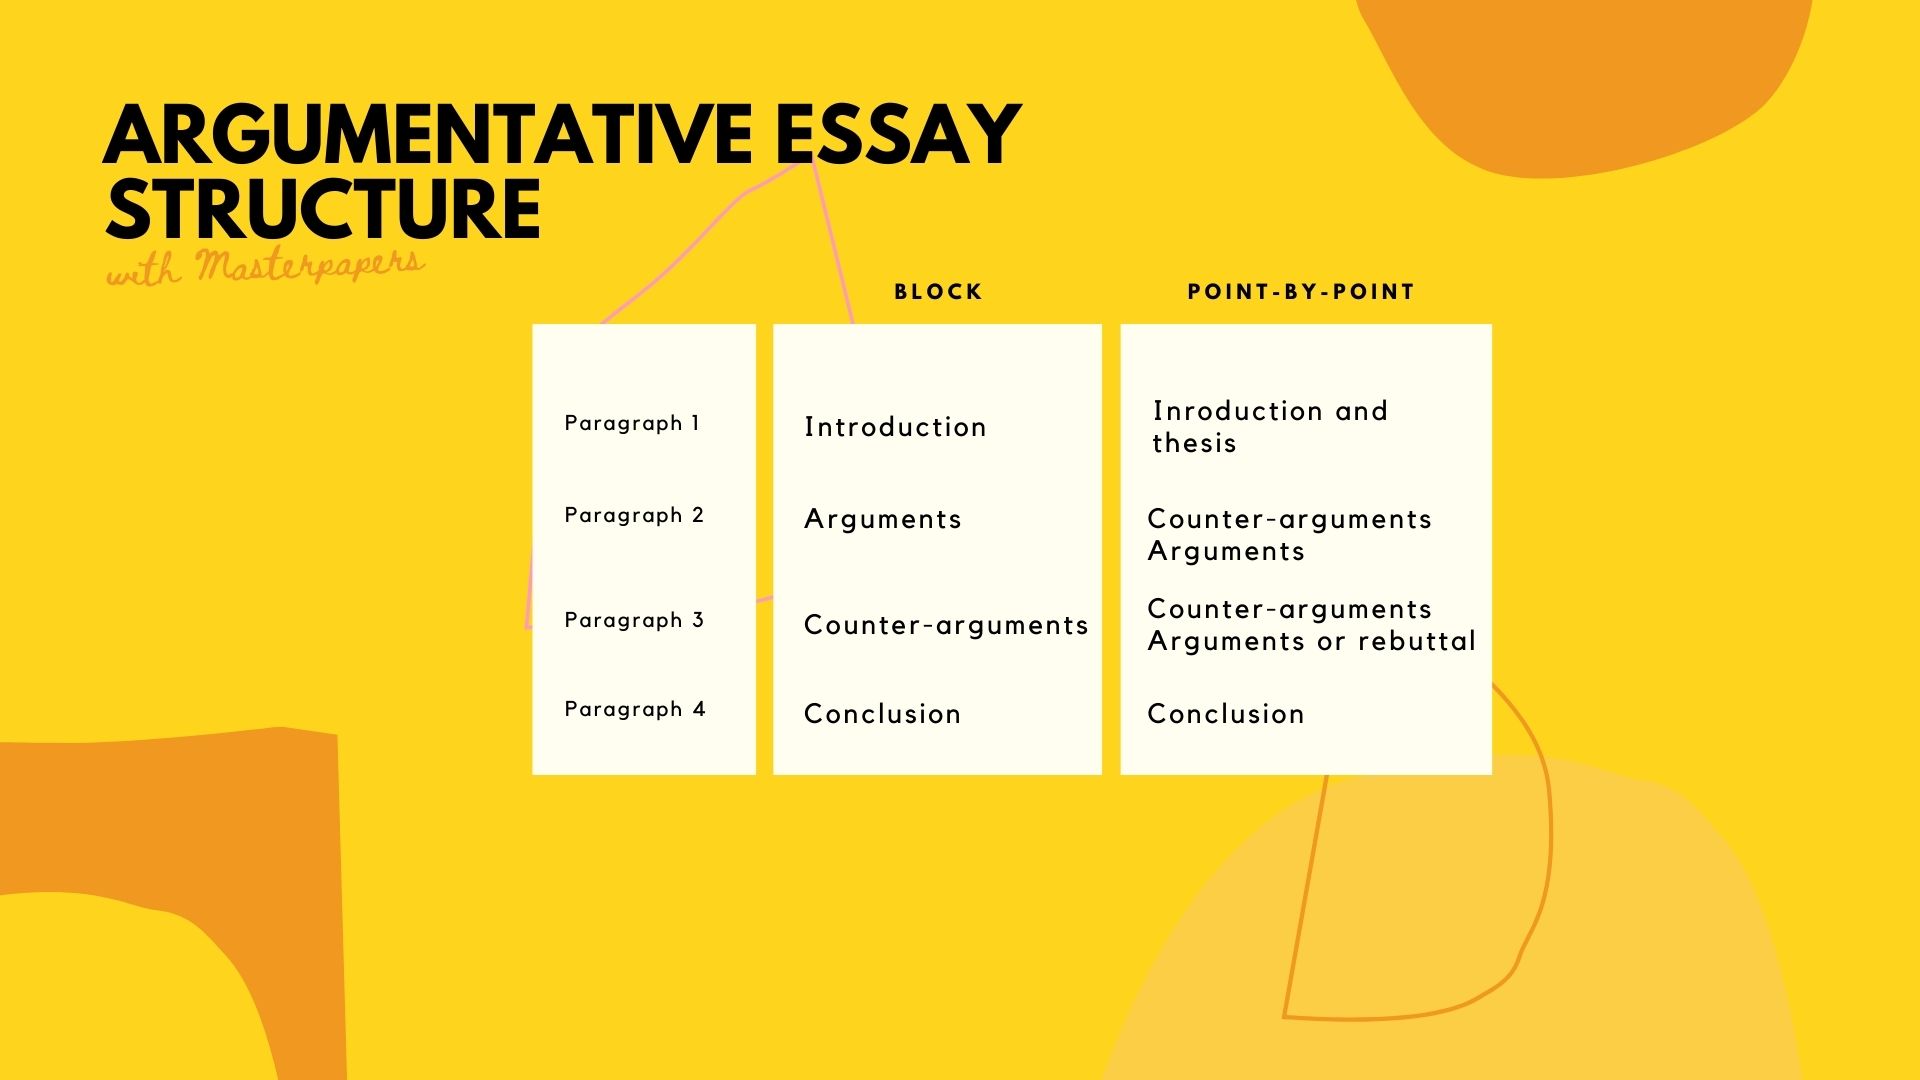 Persuasive Essay: Structure of argumentative essay